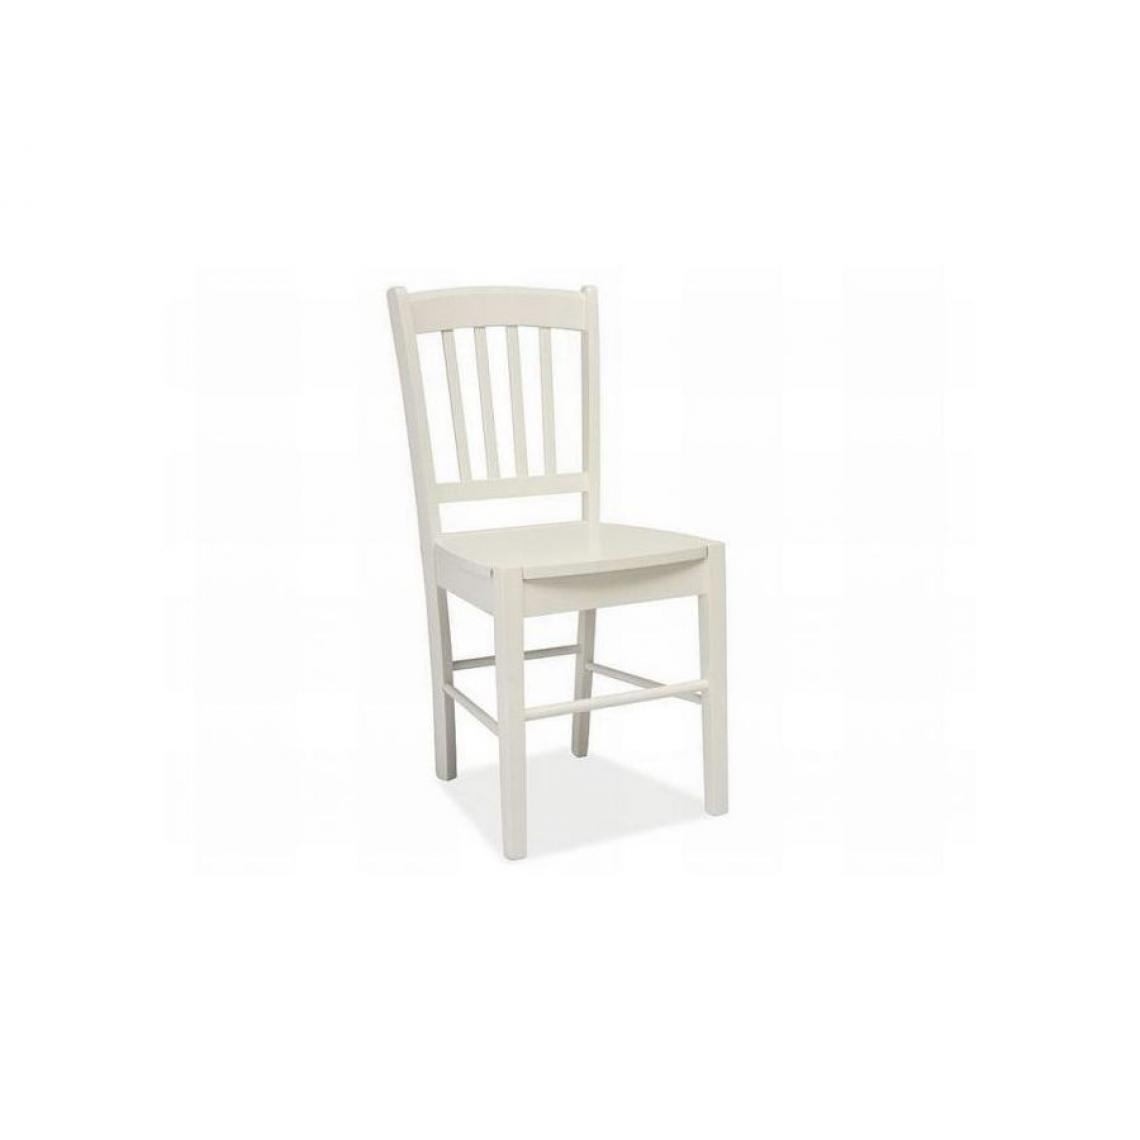 Hucoco - EDIU | Chaise en bois salle à manger salon cusine | Dimensions 85x40x36 cm | Style classique | Construction en bois - Blanc - Chaises